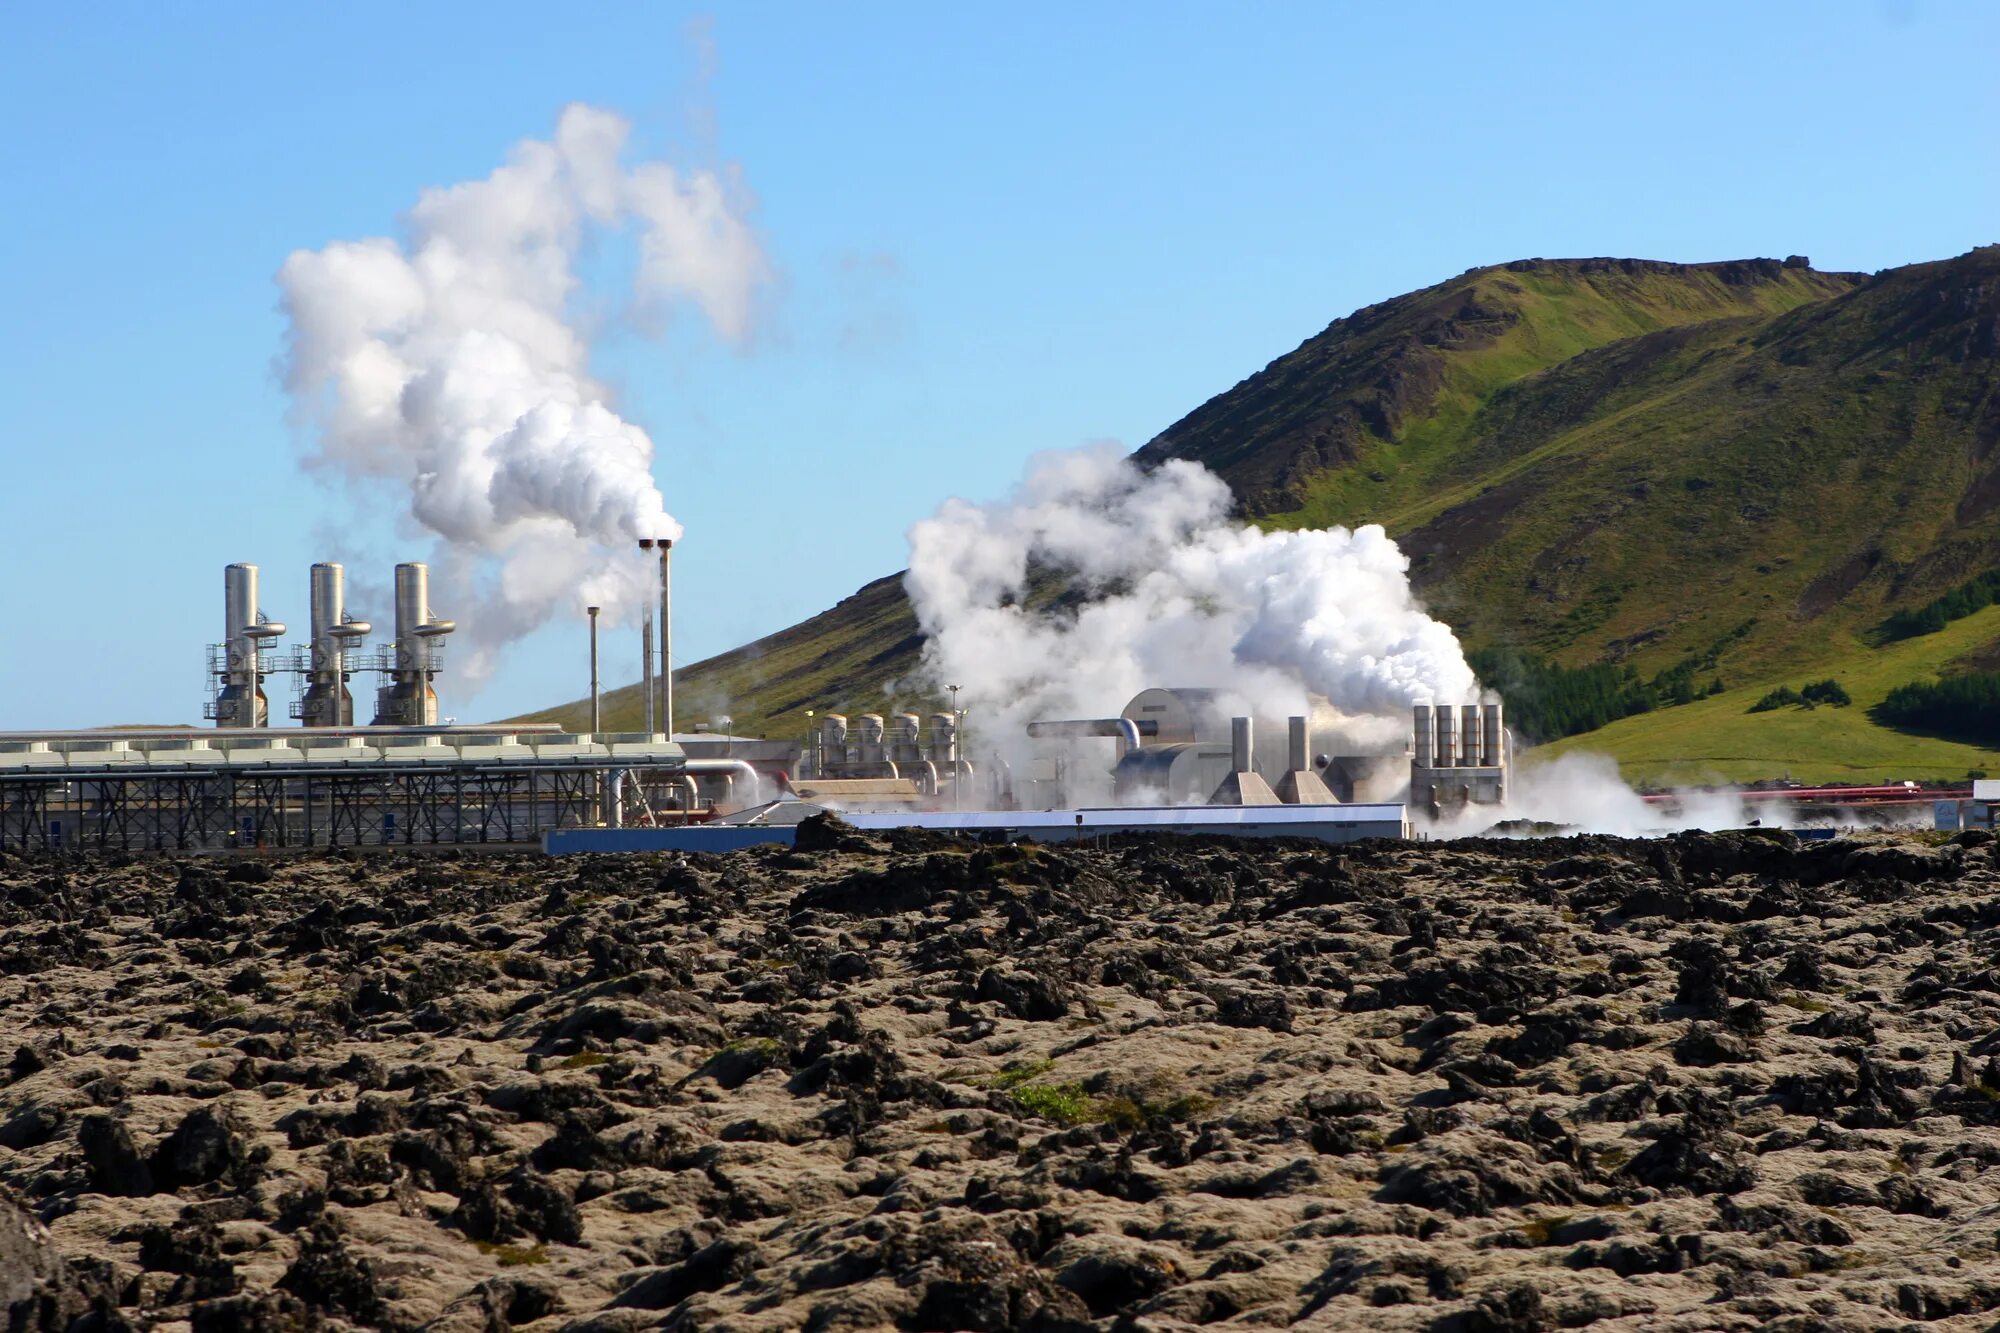 Geothermal energy. Геотермальная энергия в Исландии. Геотермальная станция в Исландии. Utyjnthvfkmyfz 'ktrnhjcnfywbz d bckfyl;BB. Несьявеллир ГЕОТЭС, Исландия.